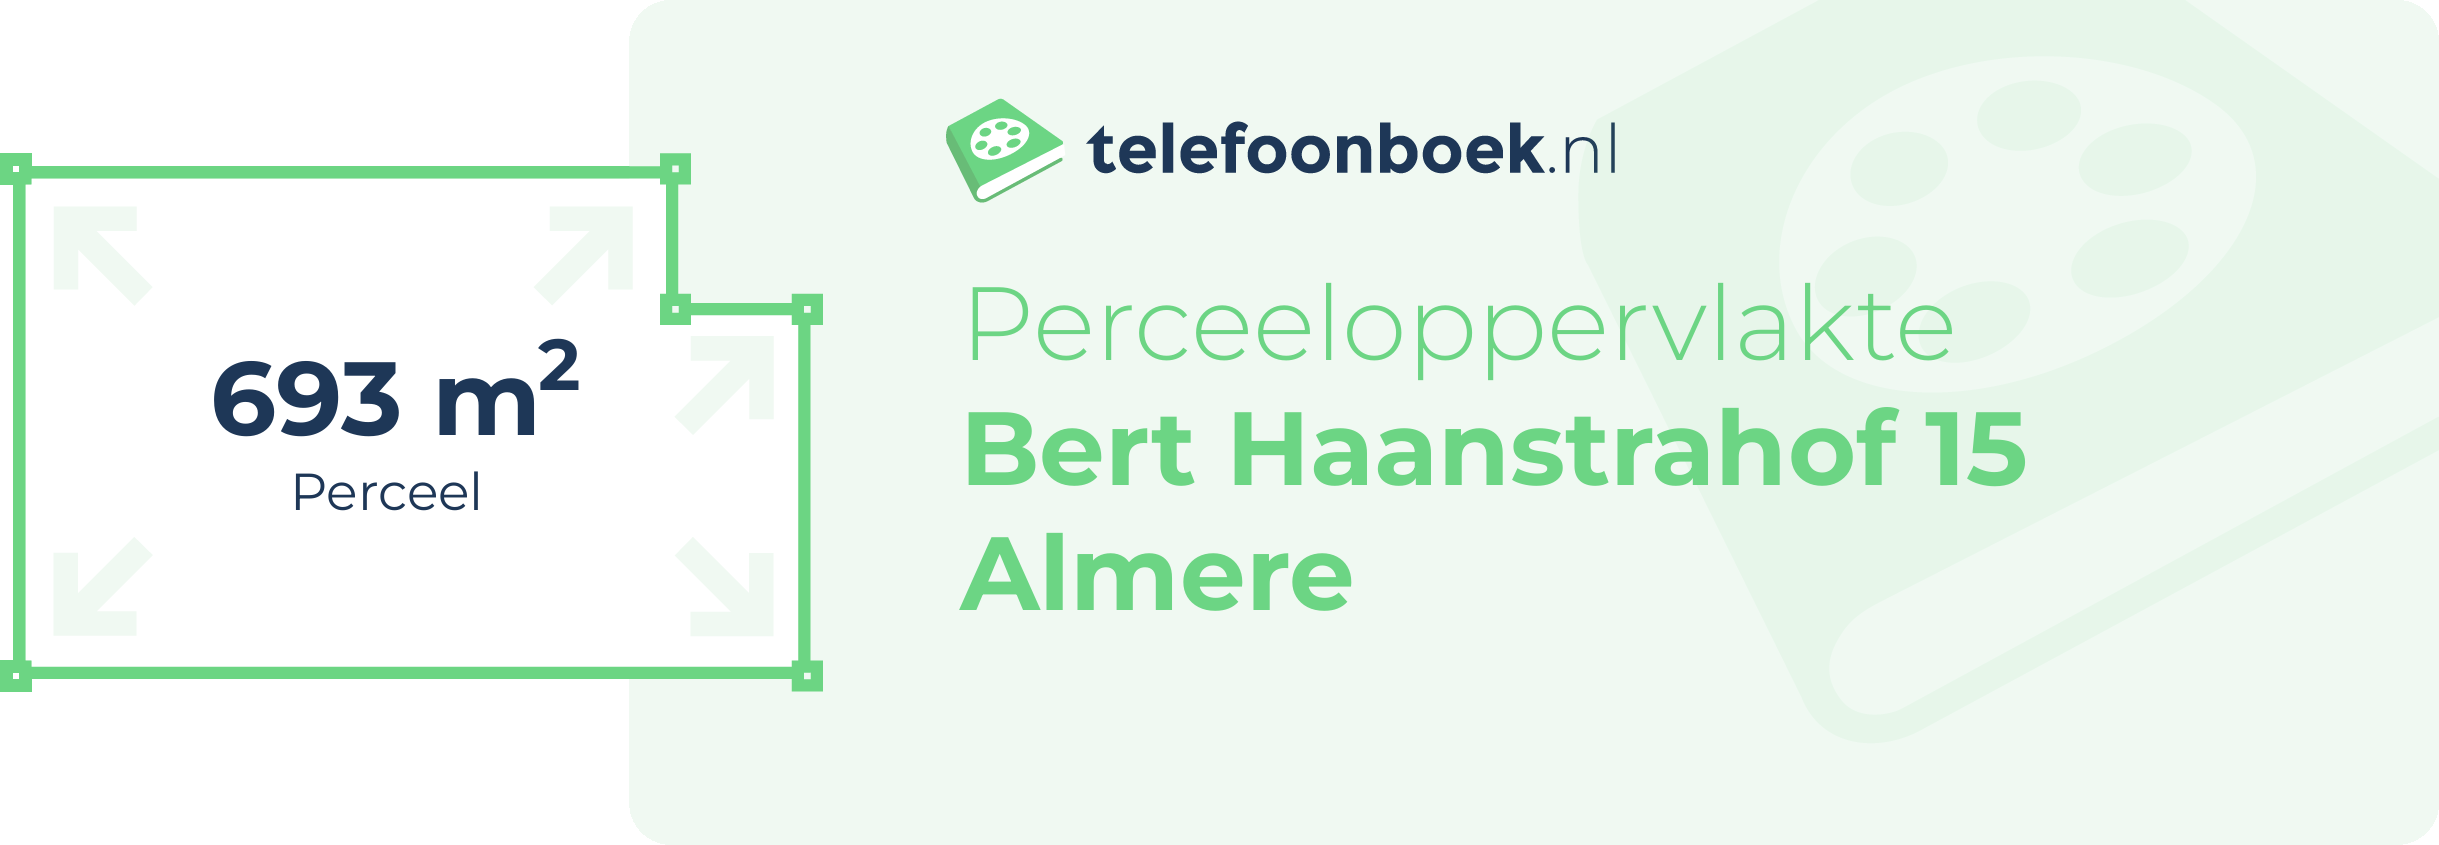 Perceeloppervlakte Bert Haanstrahof 15 Almere